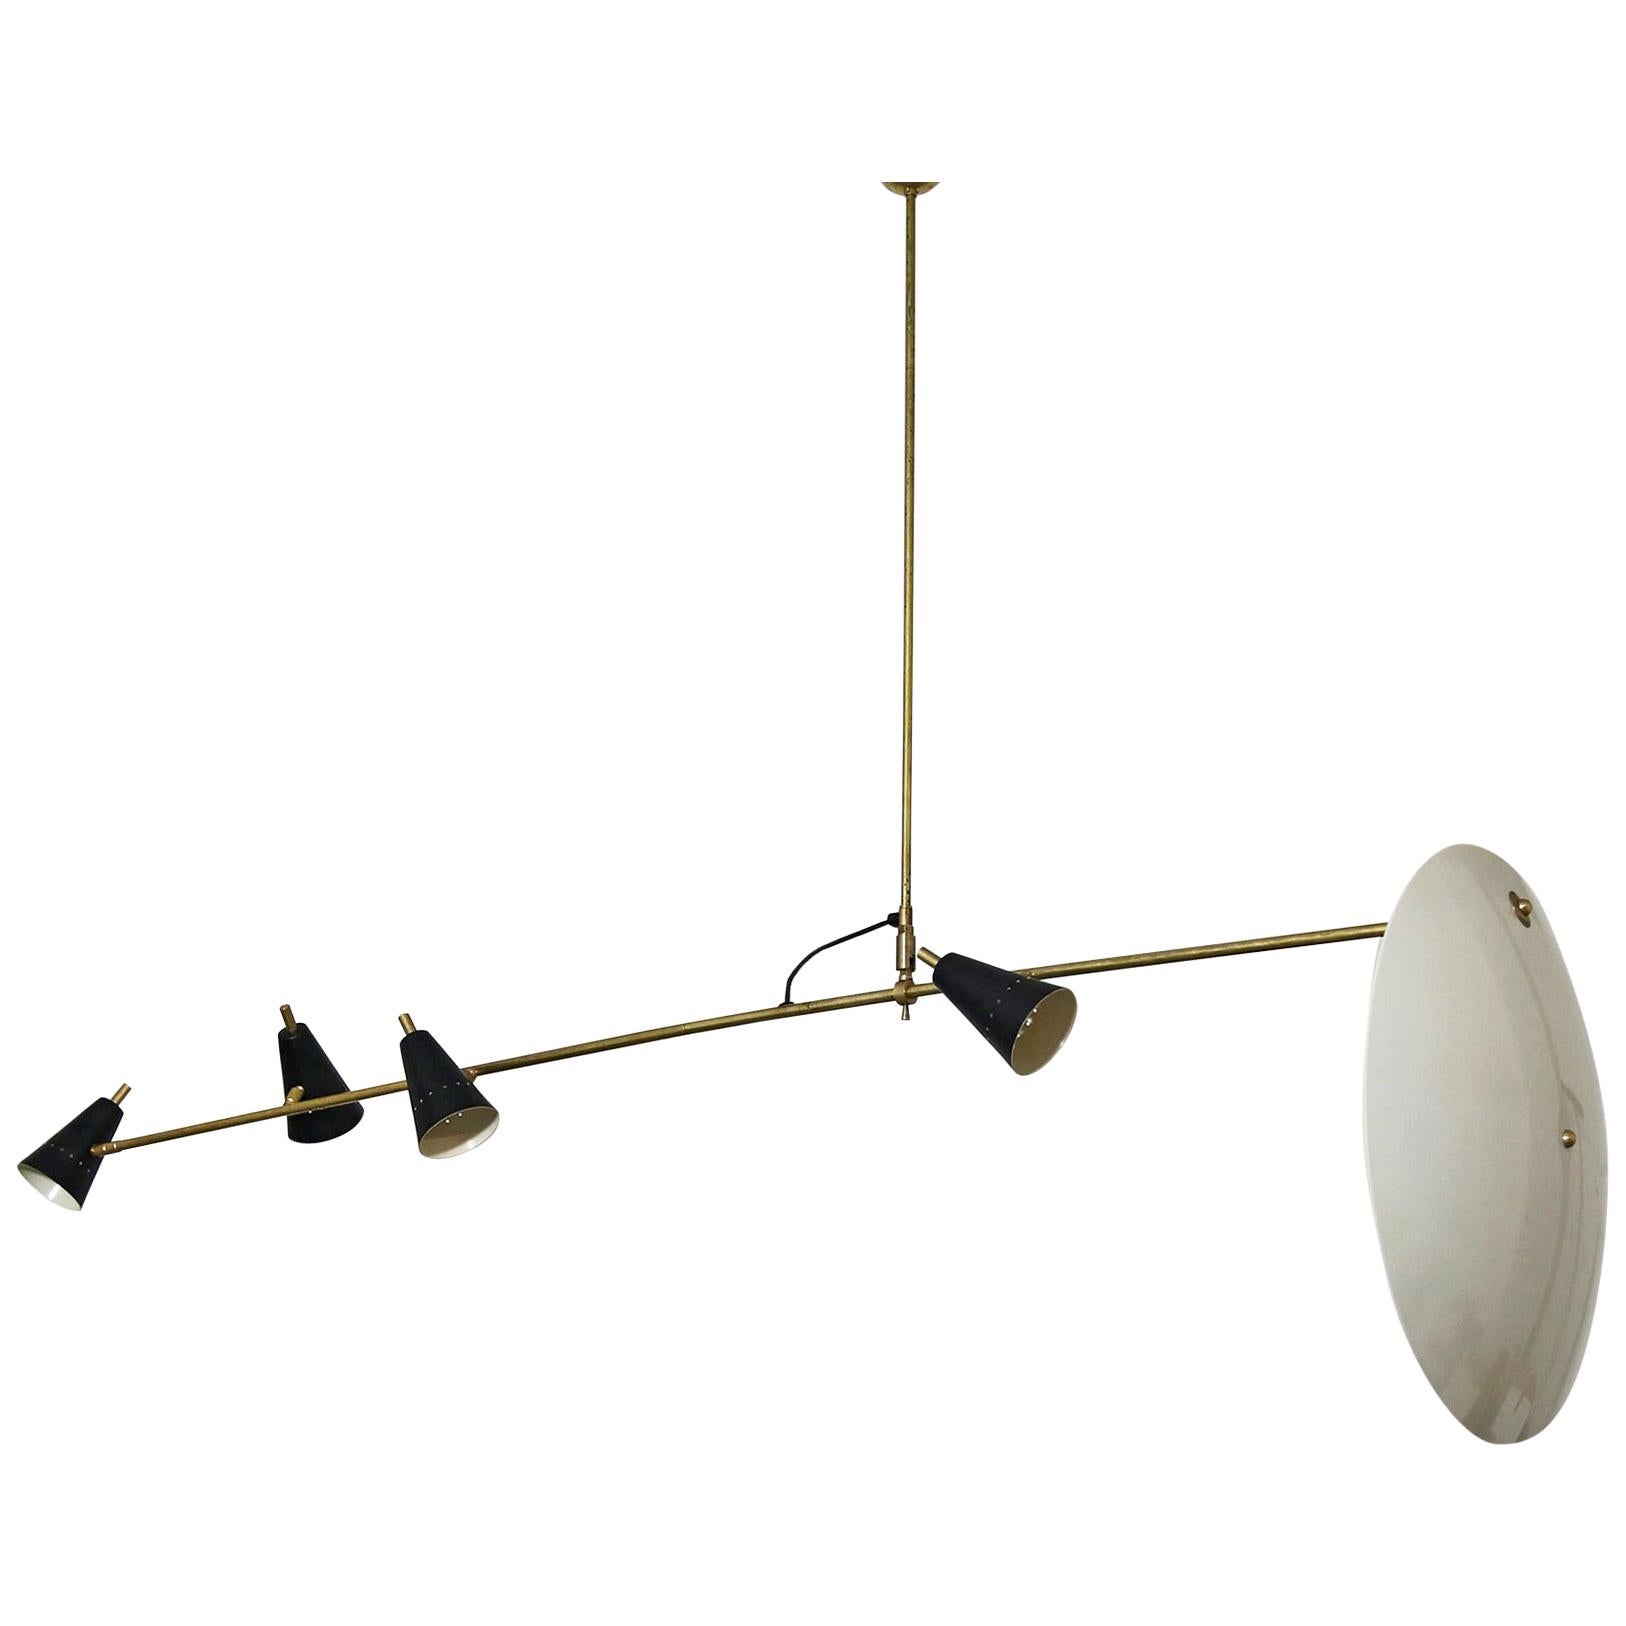 Long & Adjustable Italian Modern Ceiling Lamp, Stilnovo Style Chandelier Pendant